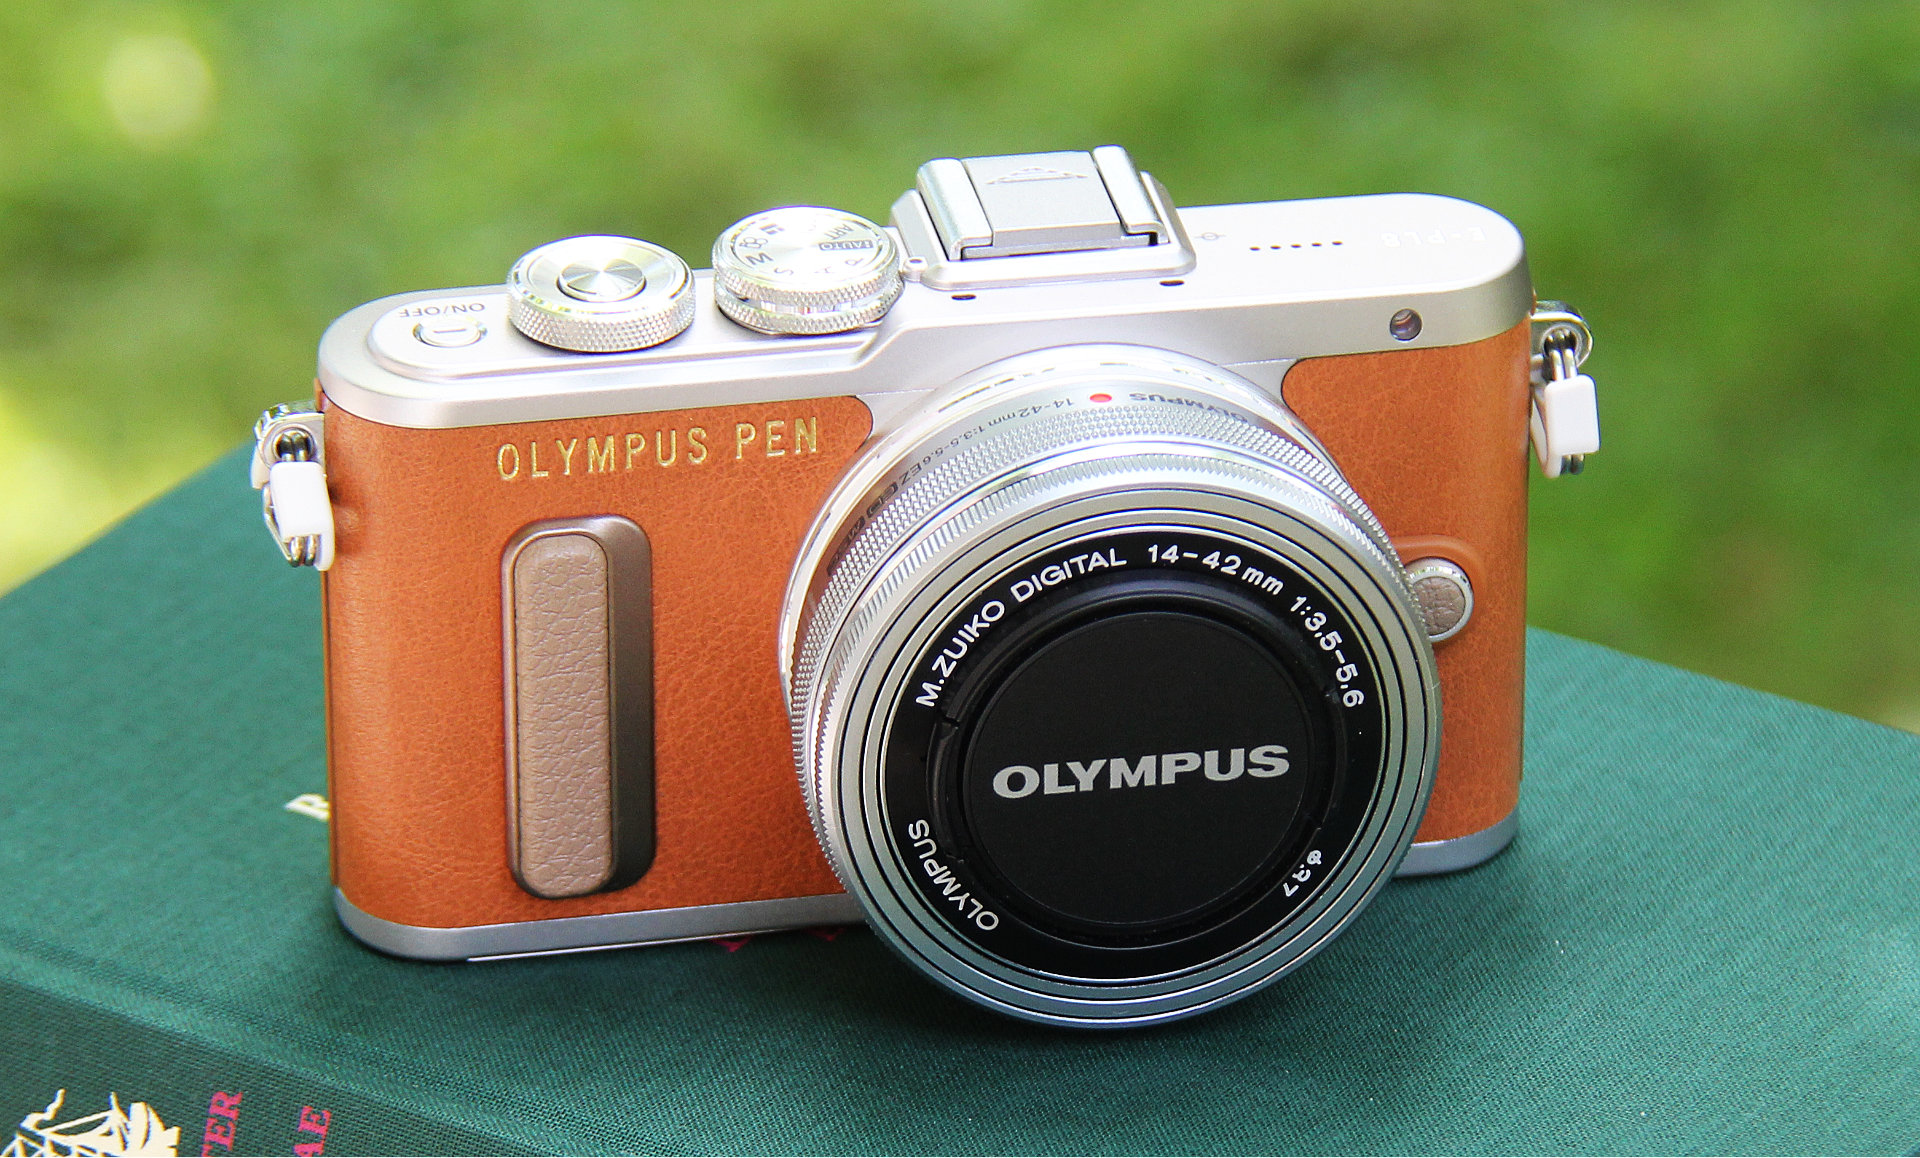 Meine neue Olympus PEN: Fotografieren für Blogger